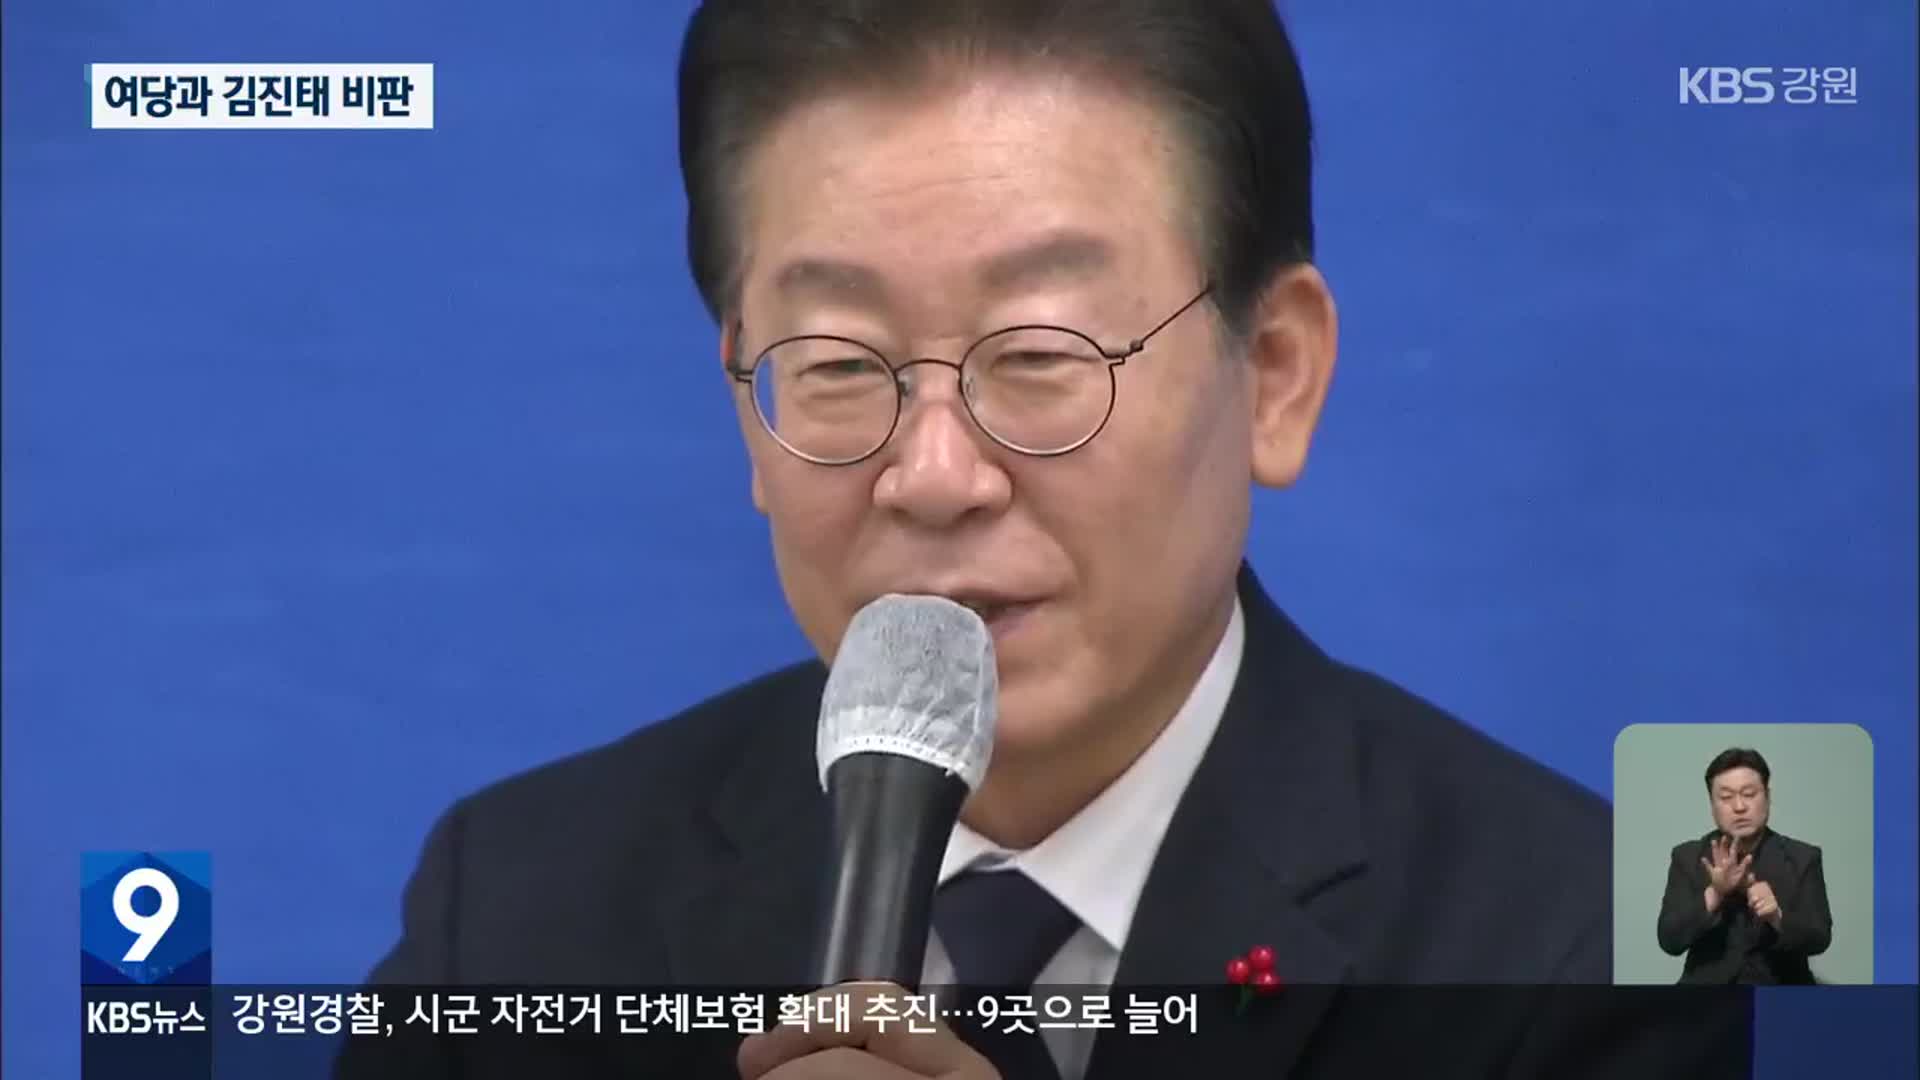 이재명 대표 첫 강원 방문 마무리…“김진태 강원도정 비판”